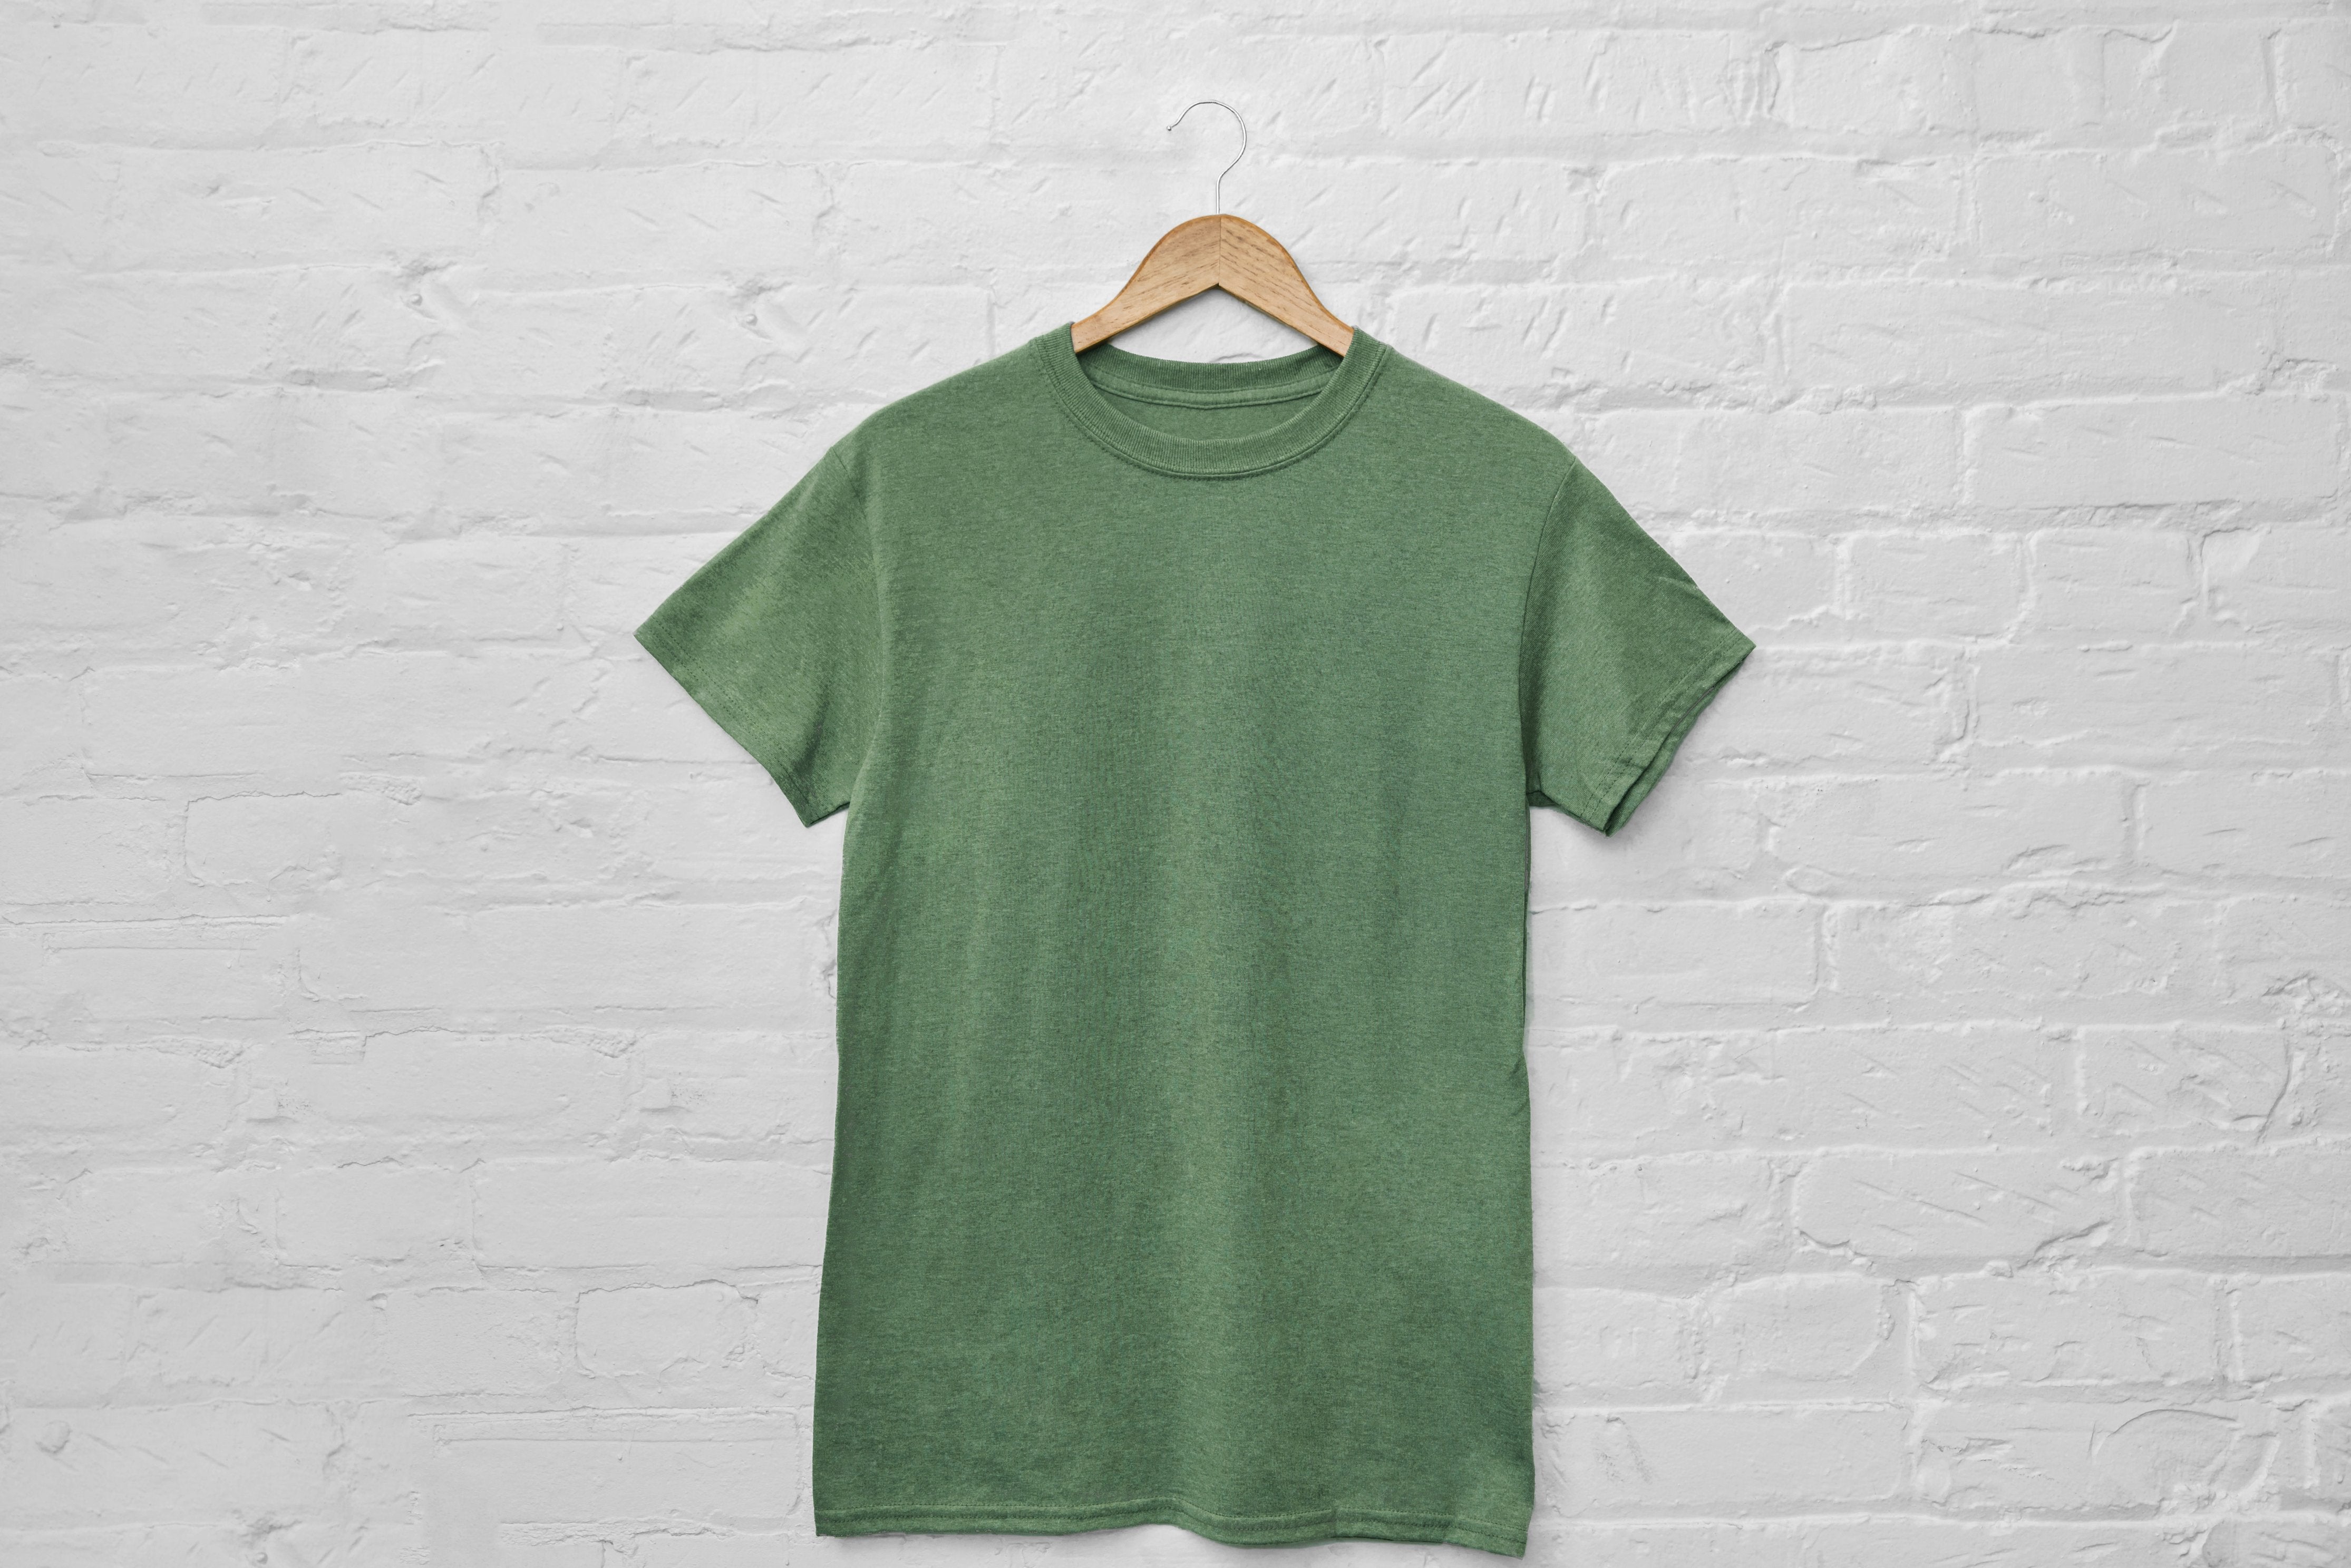 Vendere t-shirt online: scegliere la qualità delle magliette e la tipologia di stampa